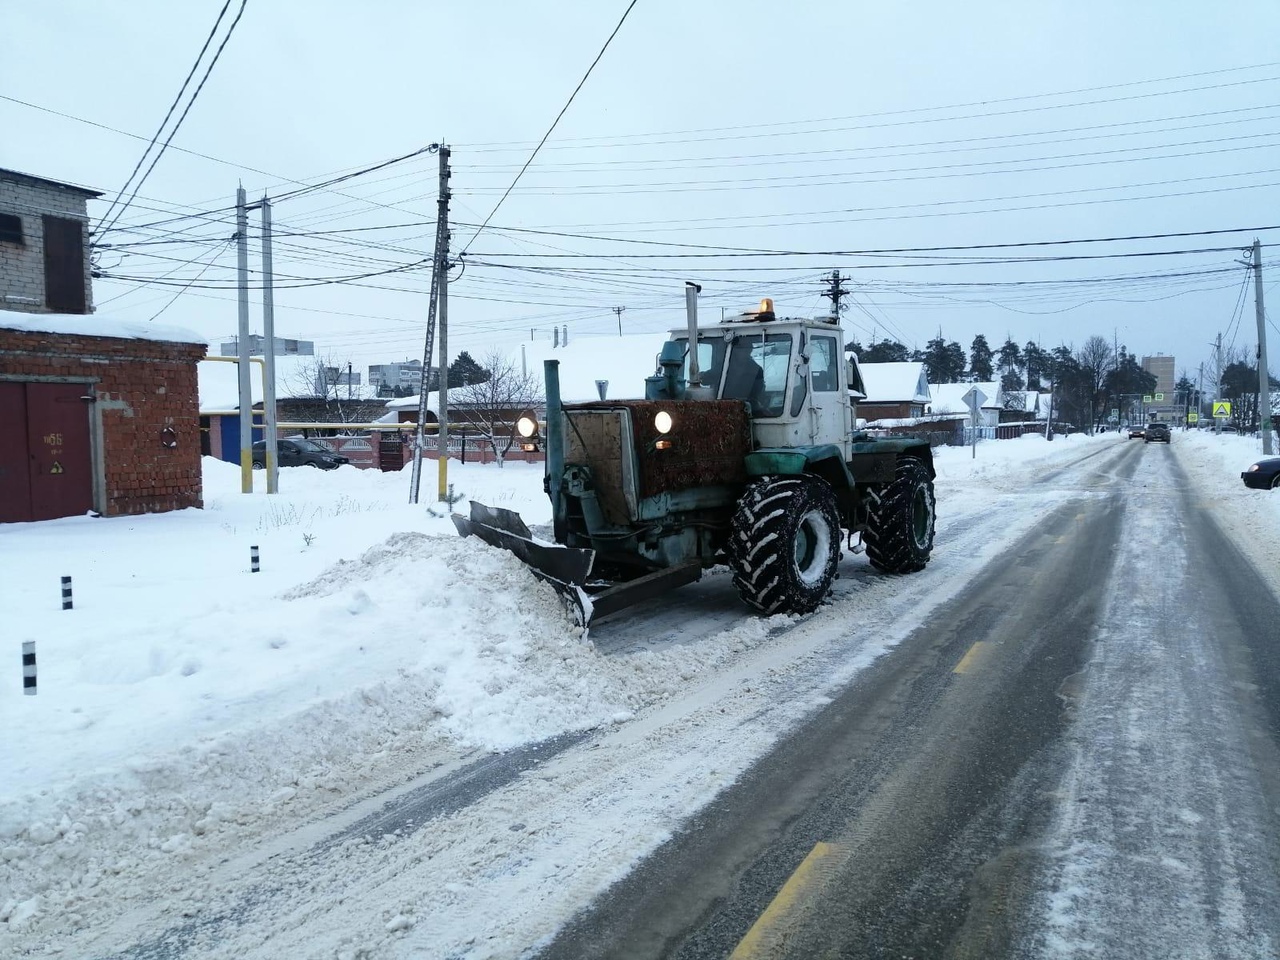 Какие дороги расчищали от снега кинешемские коммунальщики 21 декабря?